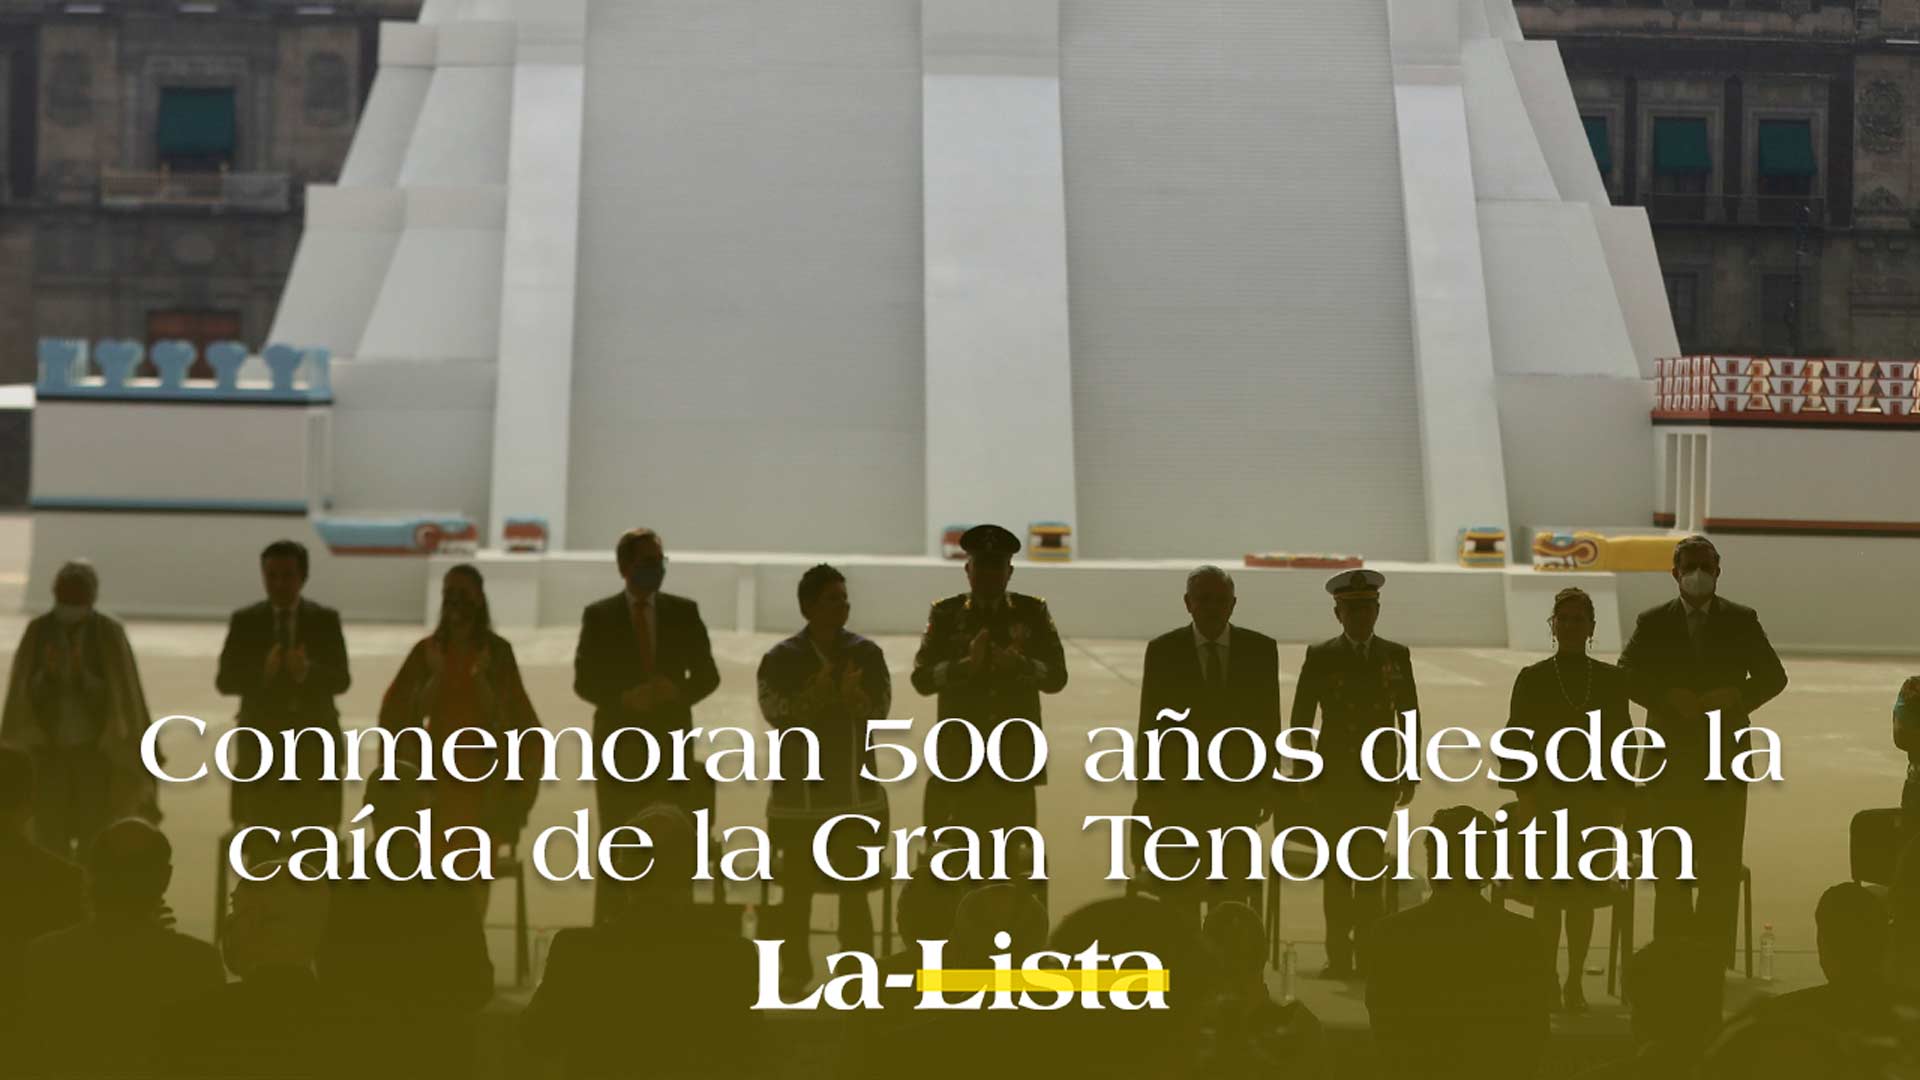 Conmemoran 500 años desde la caída de la Gran Tenochtitlan